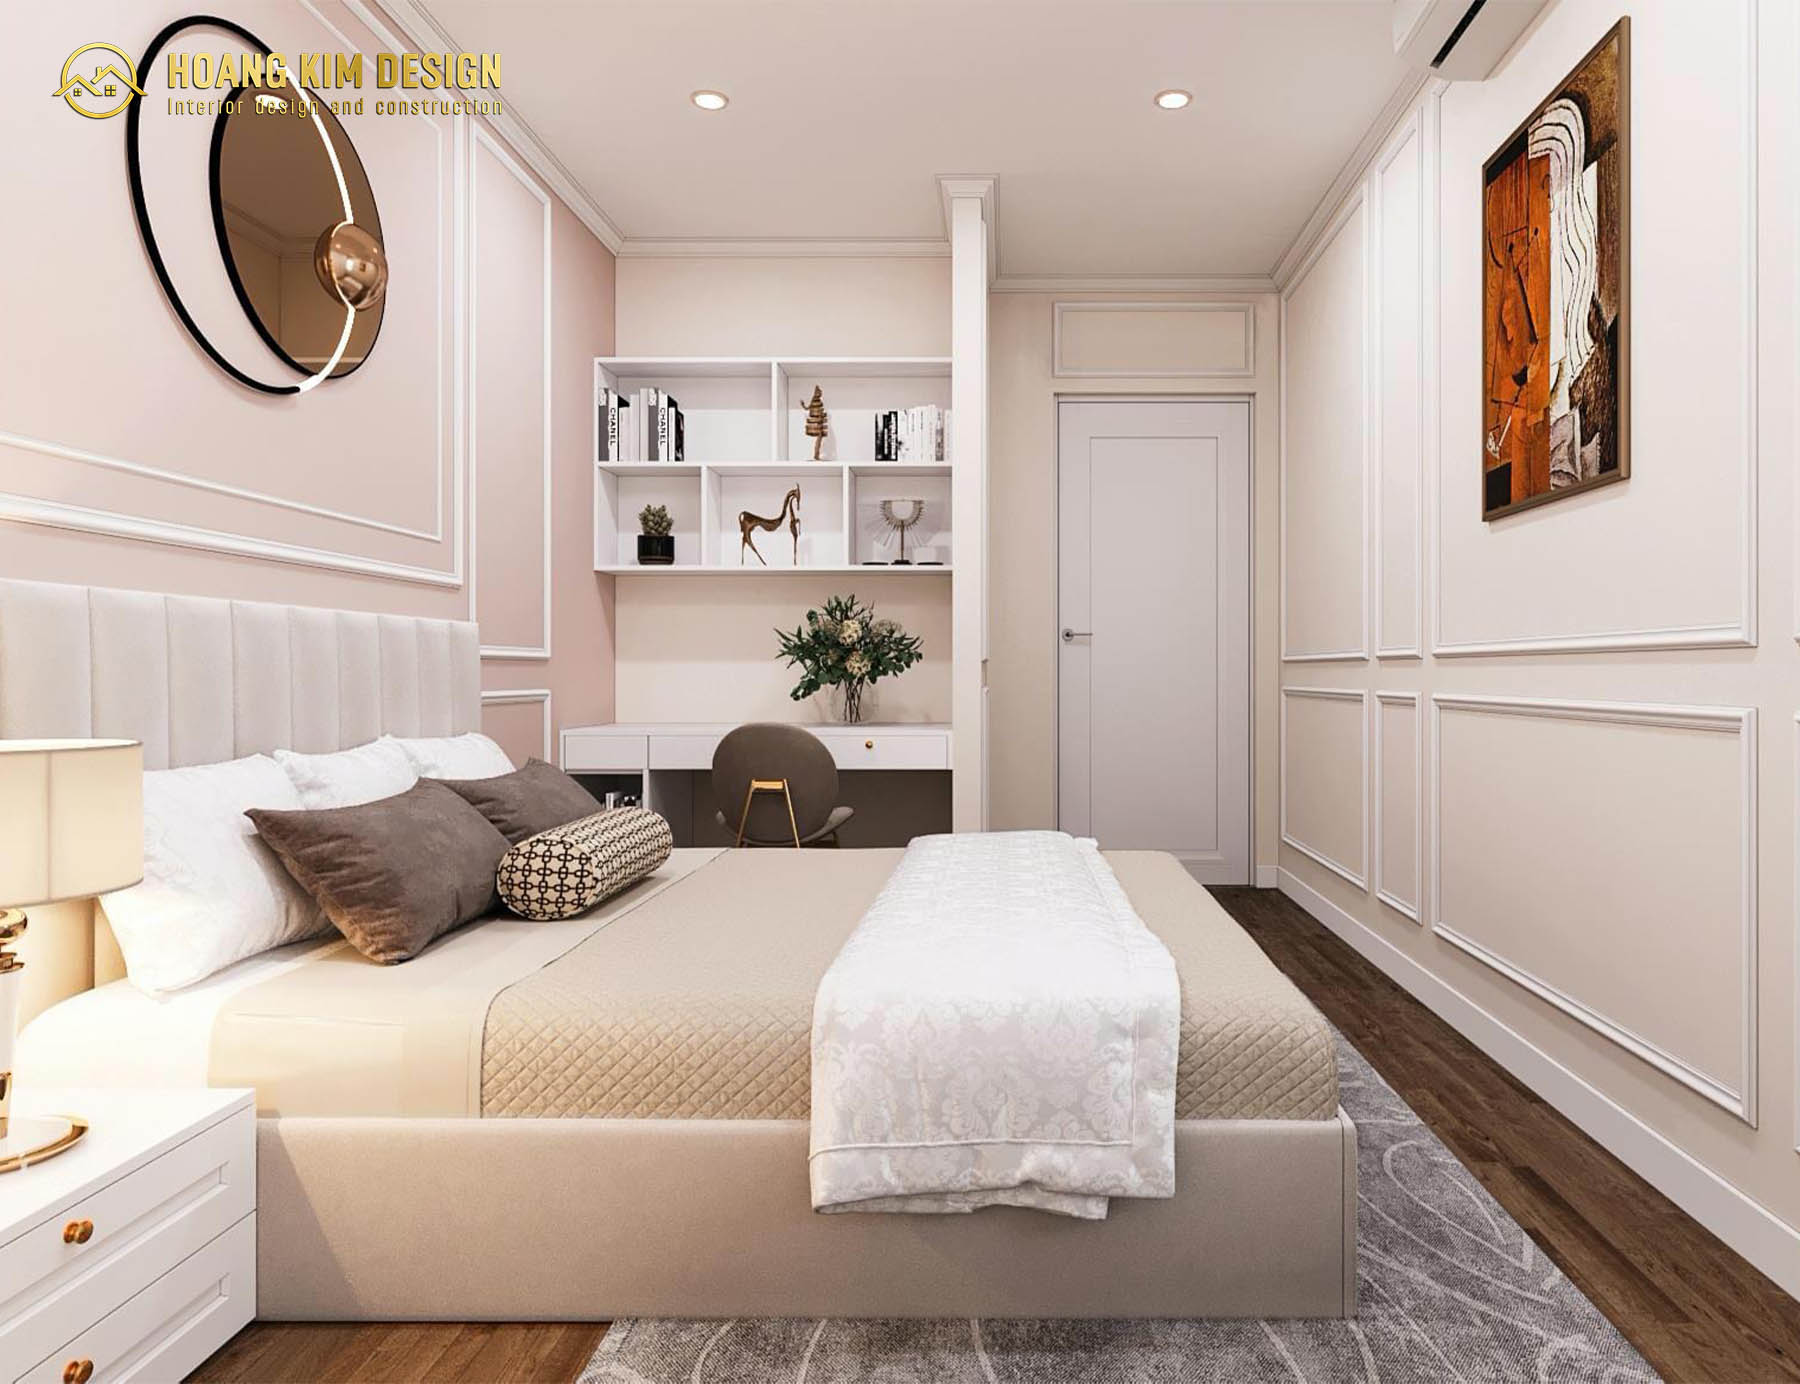 Nội thất phòng ngủ được thiết kế thông minh giúp tối ưu diện tích